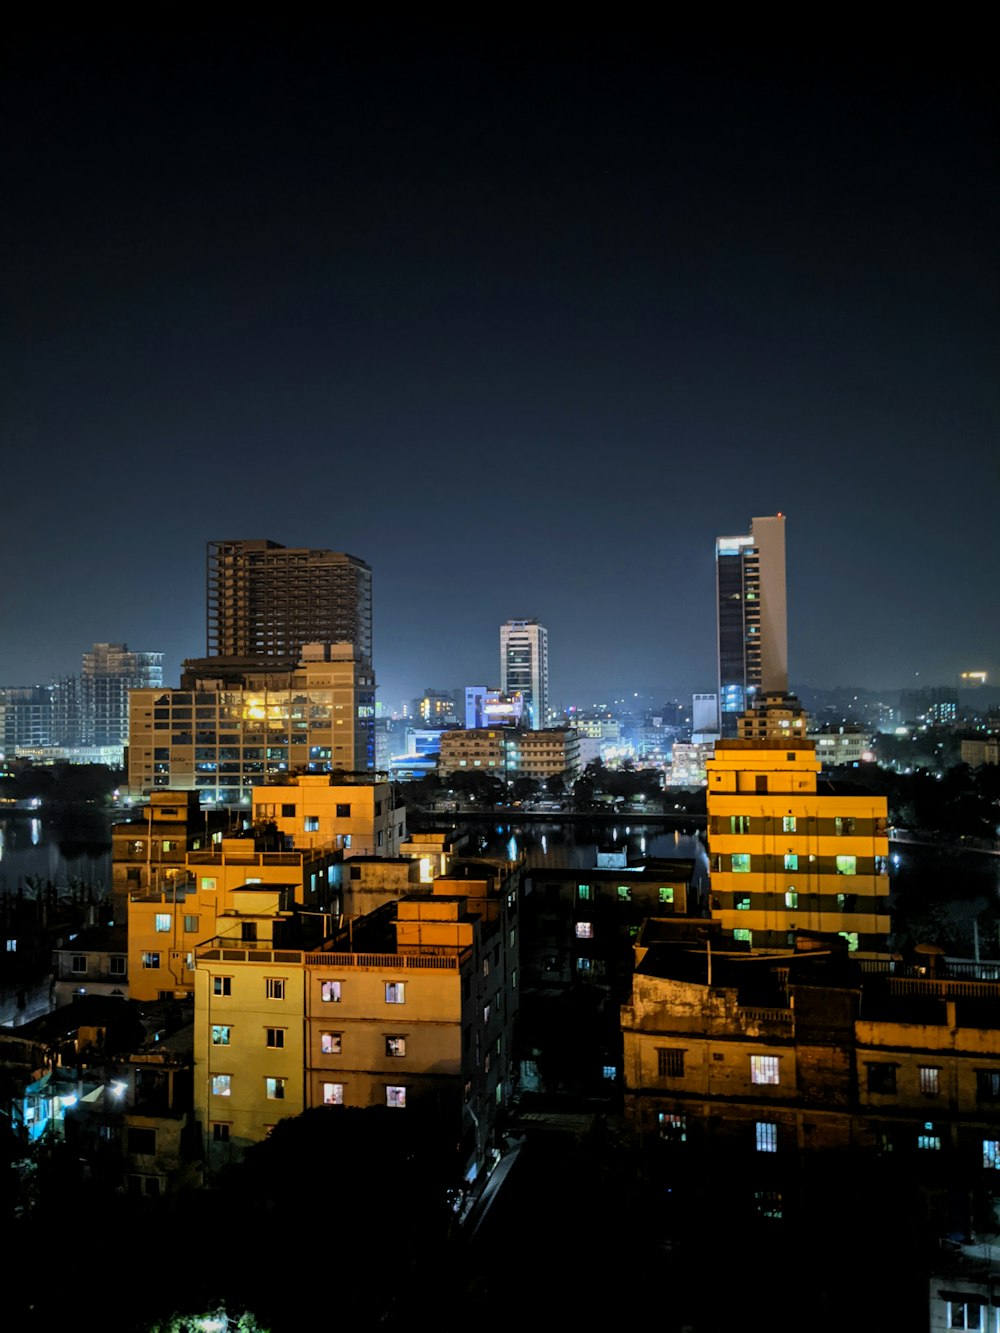 Stadt mit Hochhäusern während der Nachtzeit